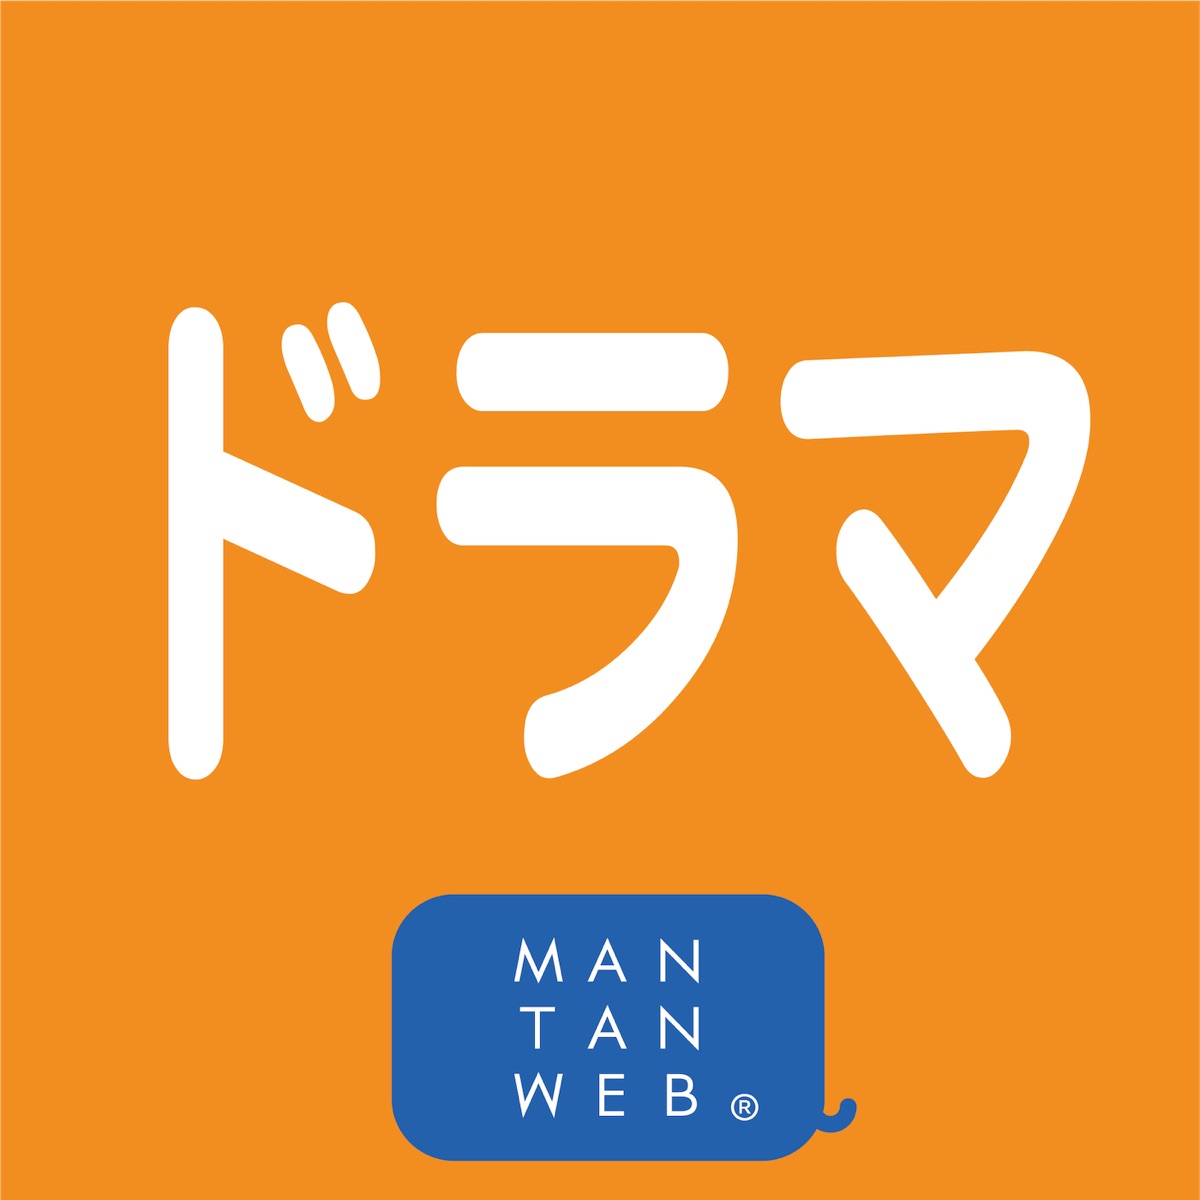 ドラマニュース By Mantanweb Podcast Podtail